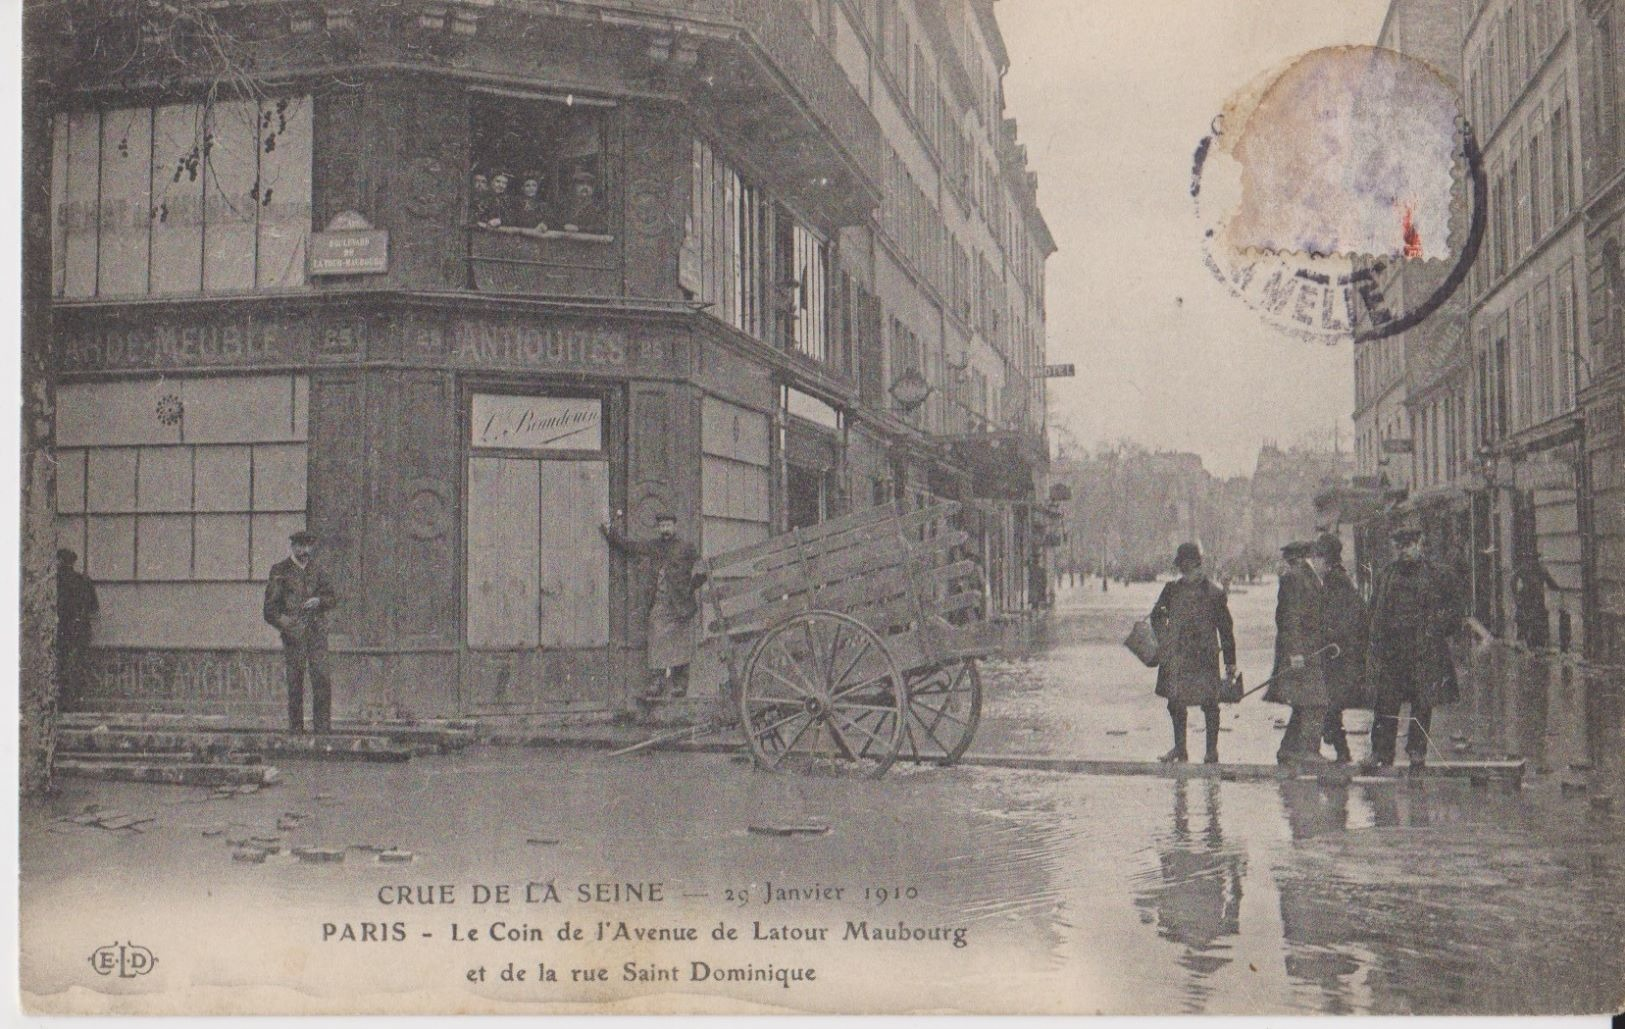 Crue De La Seine - 29 Janvier 1910 - Paris - Le Coin De L'Avenue De Latour Maubourg Et De La Rue Saint-Dominique - ELD - Inondations De 1910